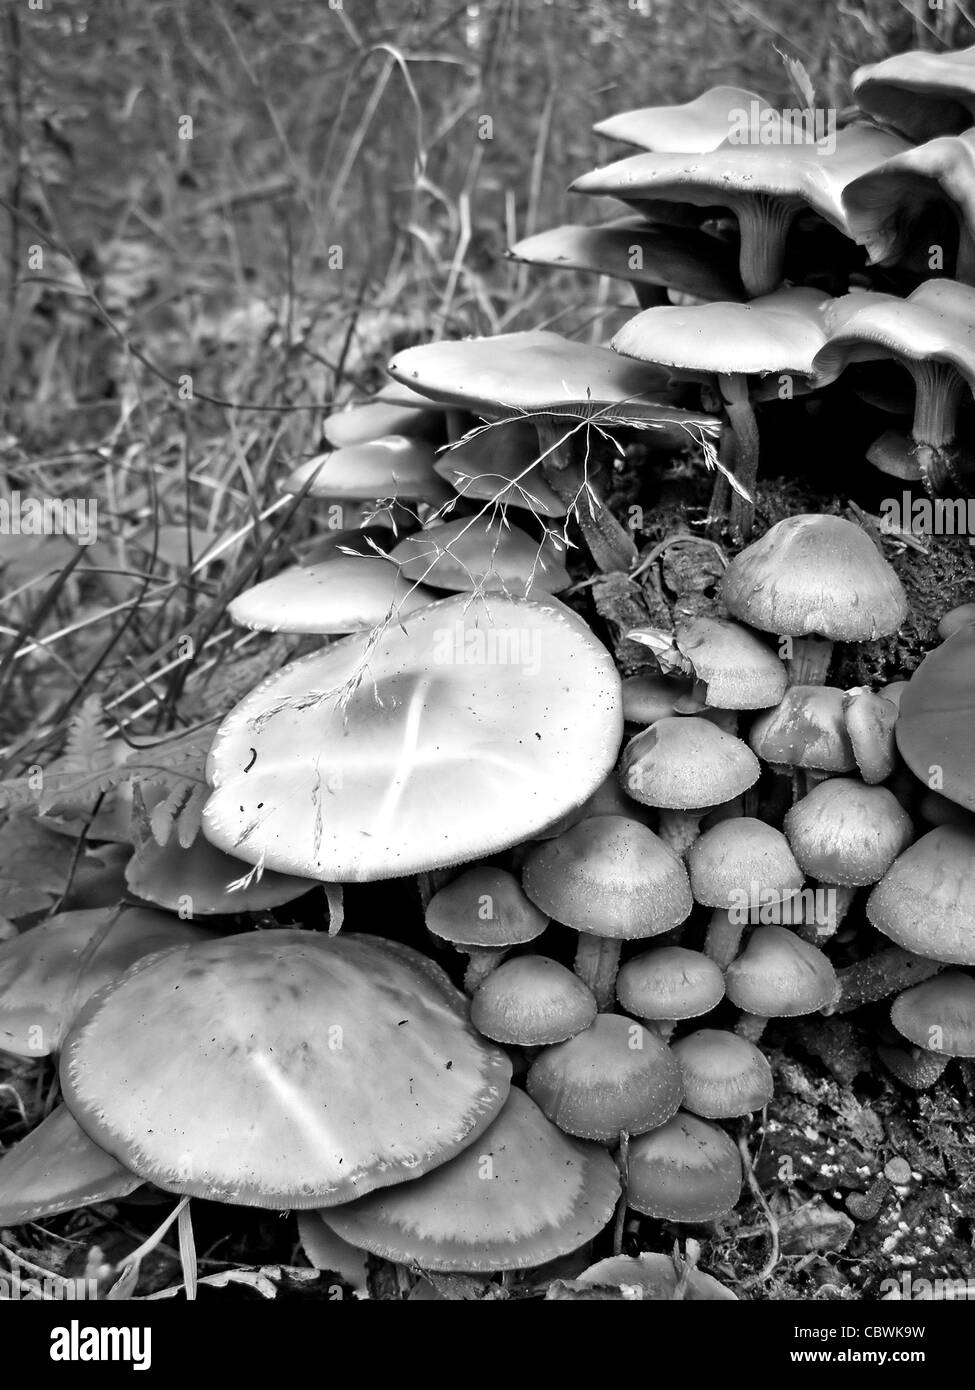 poisonous mushrooms on stump tree Stock Photo